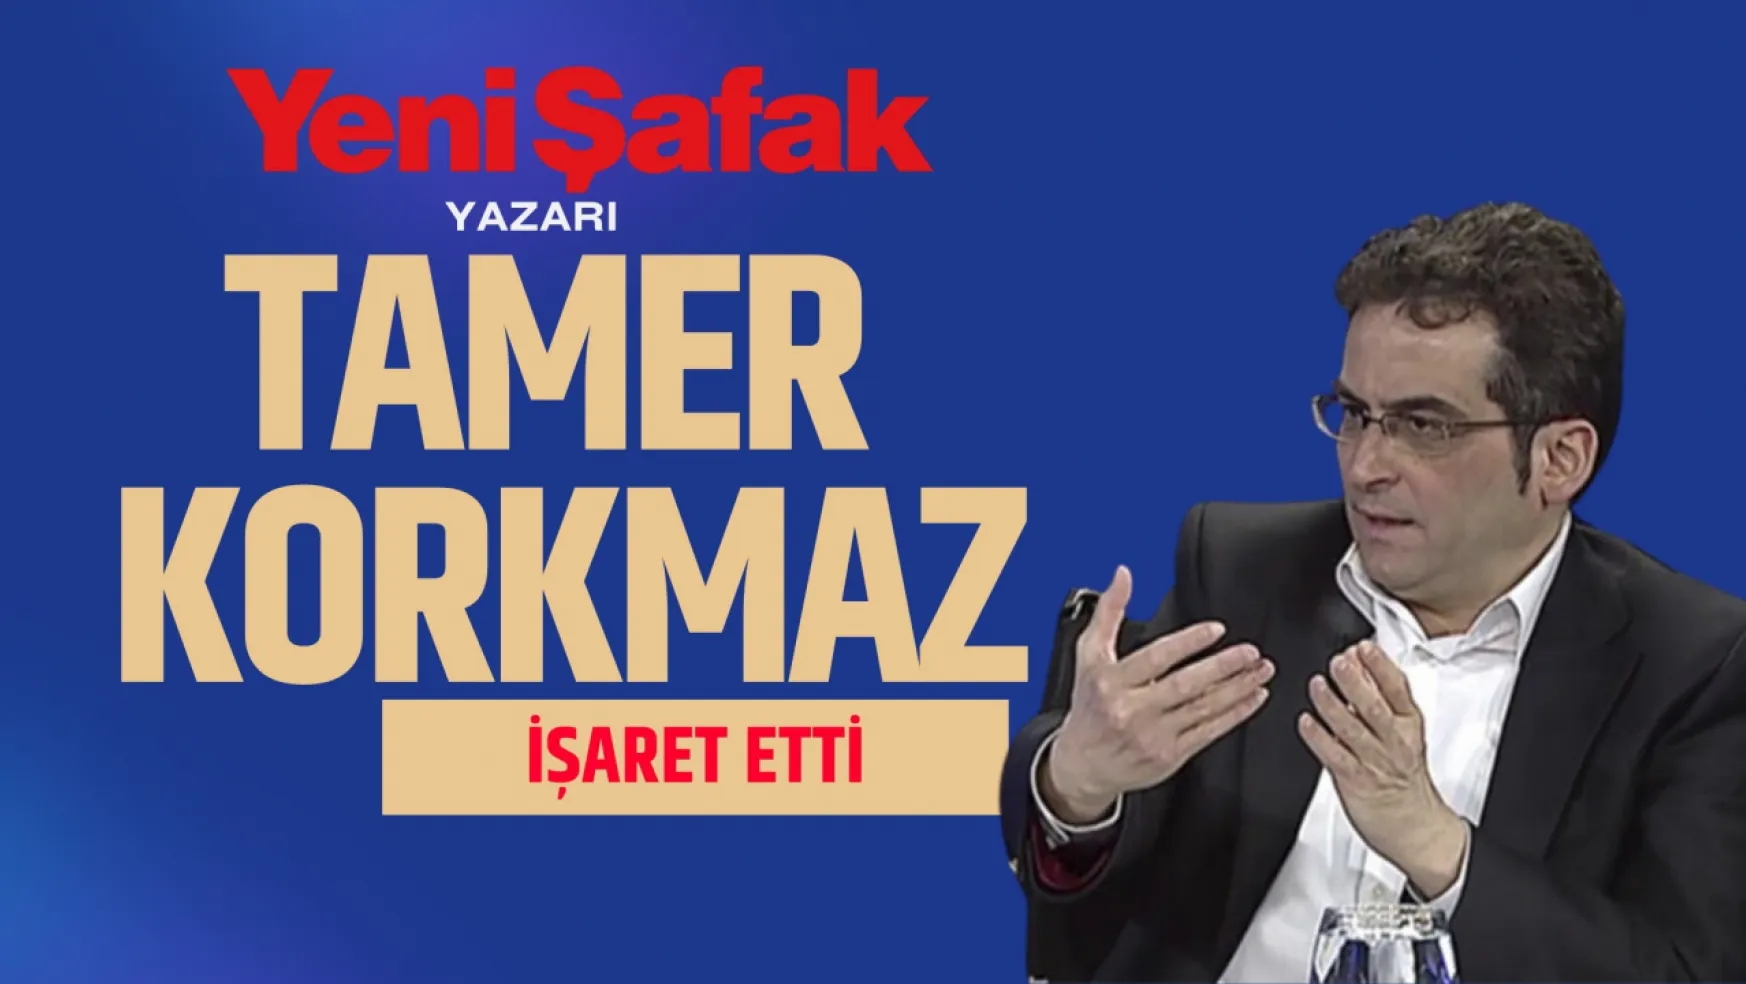 Tamer Korkmaz politikadam.com'u İşaret Etti